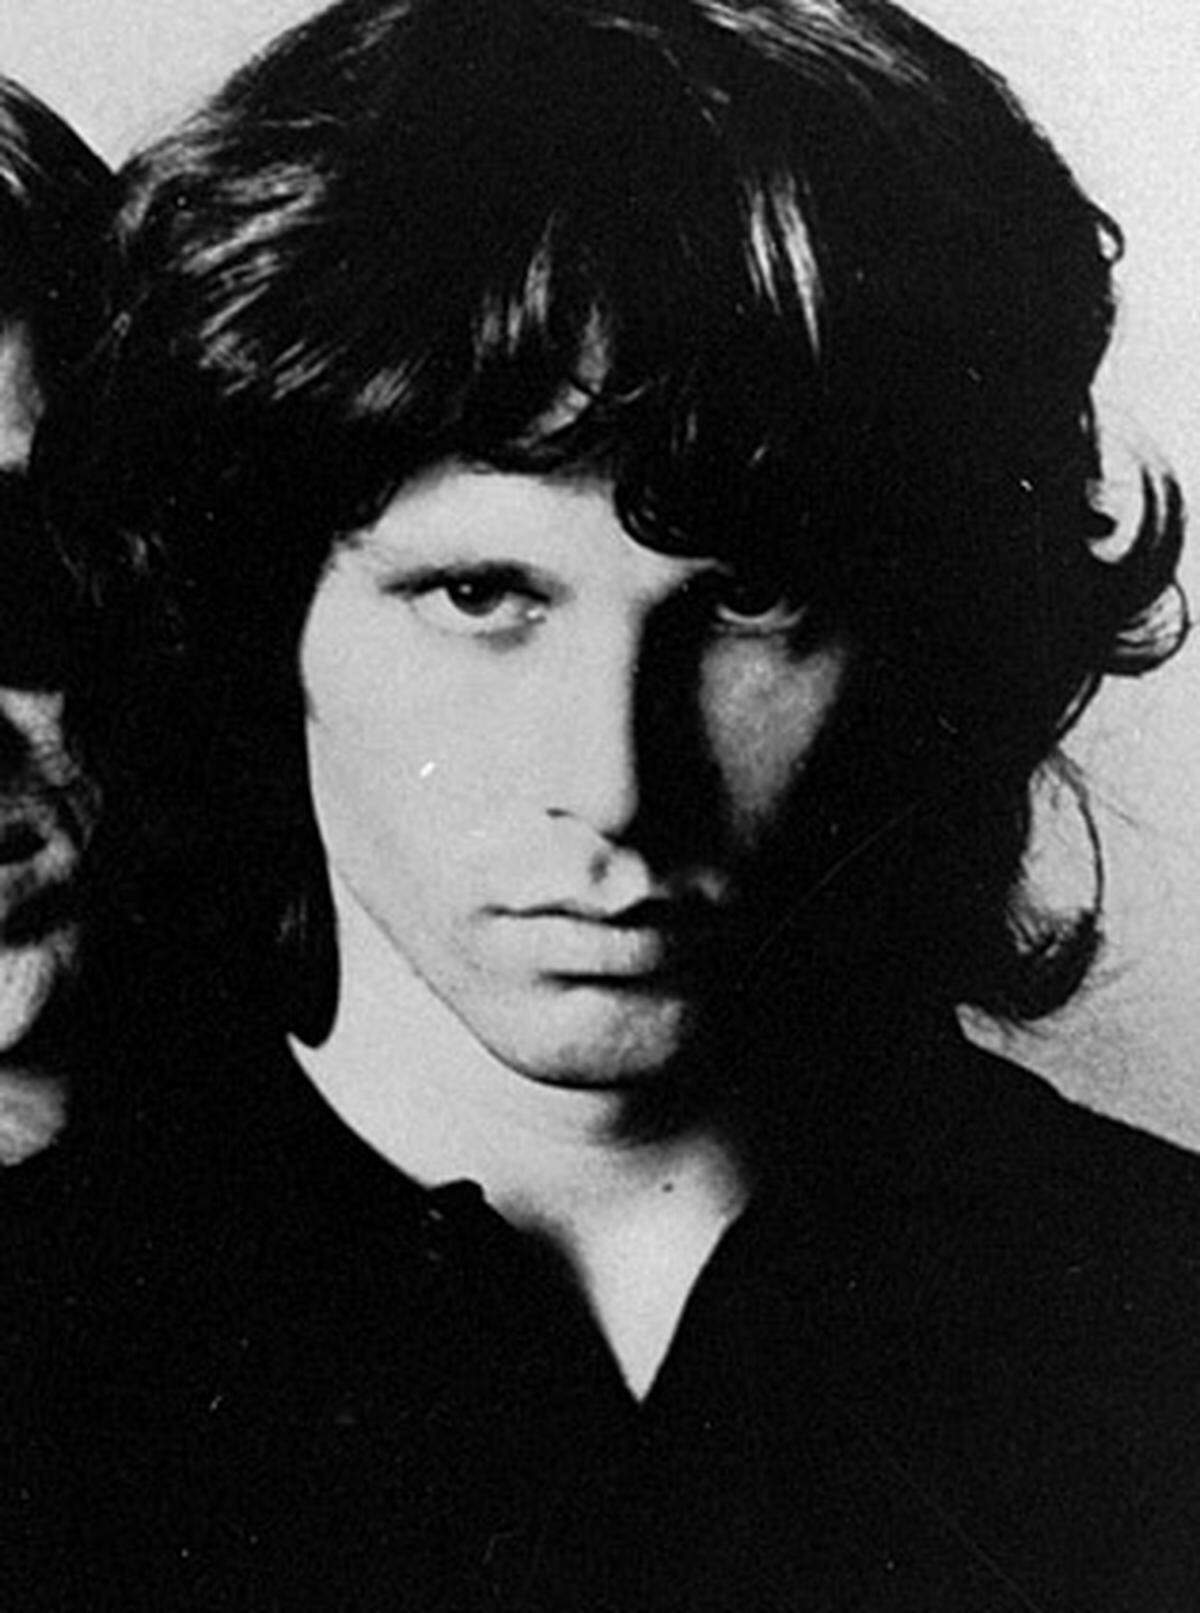 Der Sänger und Kopf der legendären Blues- und Rockband "The Doors" inszenierte viele seiner Bühnenauftritte im Drogenwahn. Seine Ausfälle führten im Frühjahr 1971 zur Trennung. Morrison, mitunter als James Dean der 68er-Generation eingestuft, starb am 3. Juli 1971 in einem Hotel in Paris an einem Herzschlag.